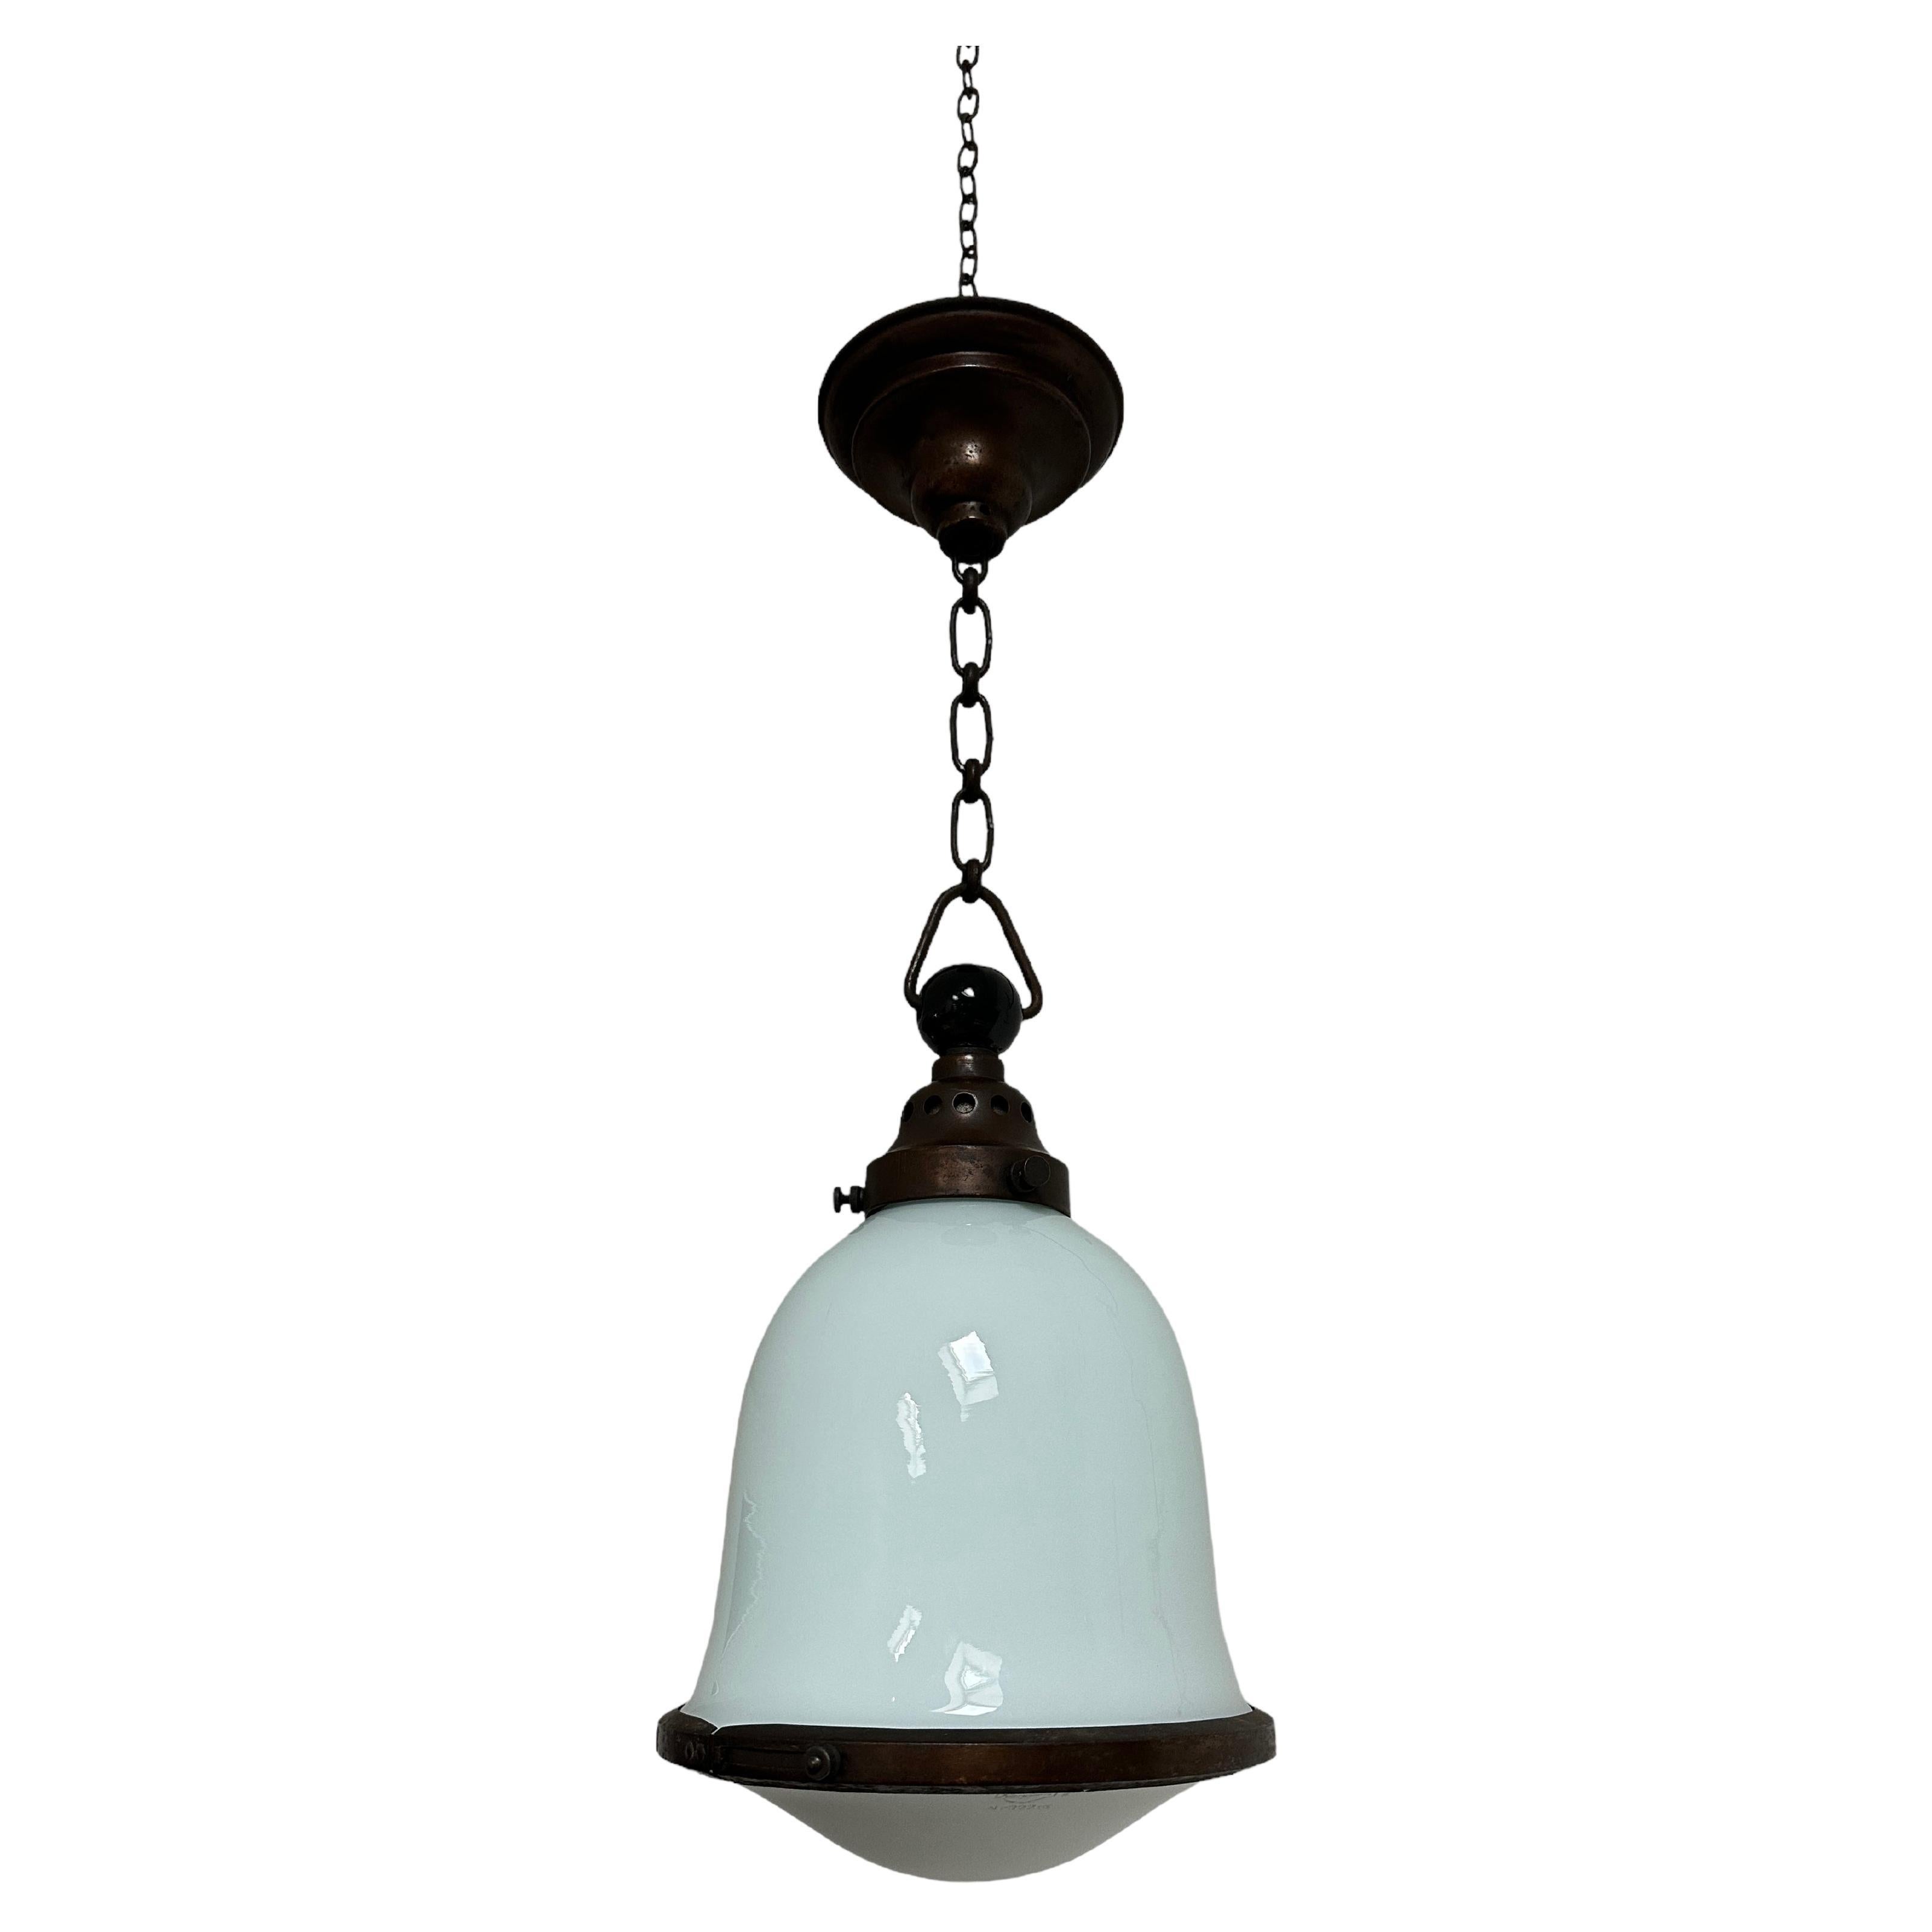 Antique Vintage Bauhaus Kandem Opaline Milk Glass Ceiling Pendant Light Lamp